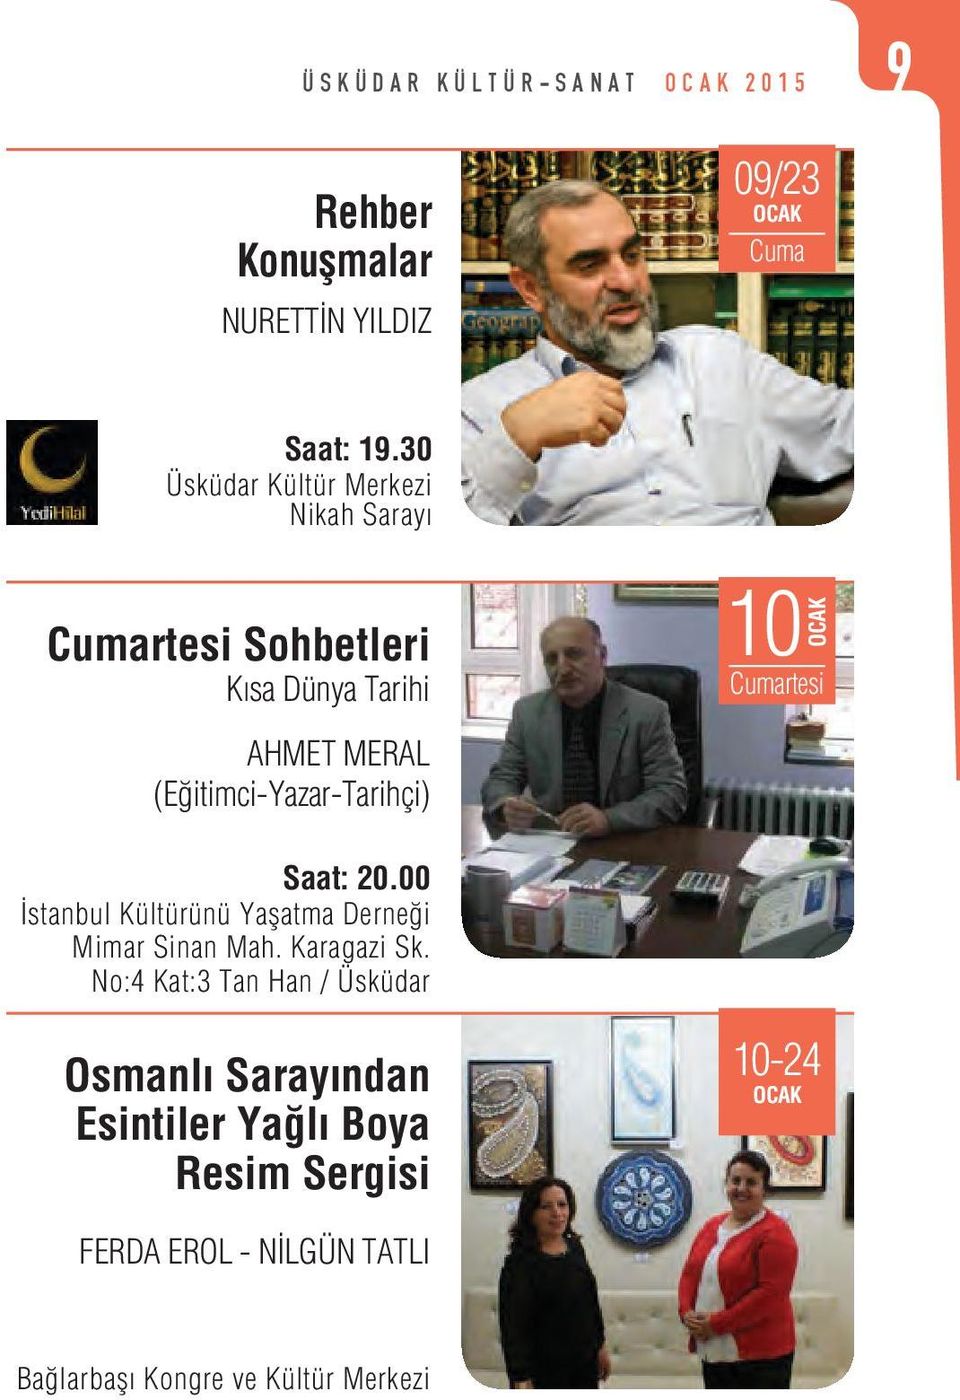 10 Saat: 20.00 İstanbul Kültürünü Yaşatma Derneği Mimar Sinan Mah. Karagazi Sk.